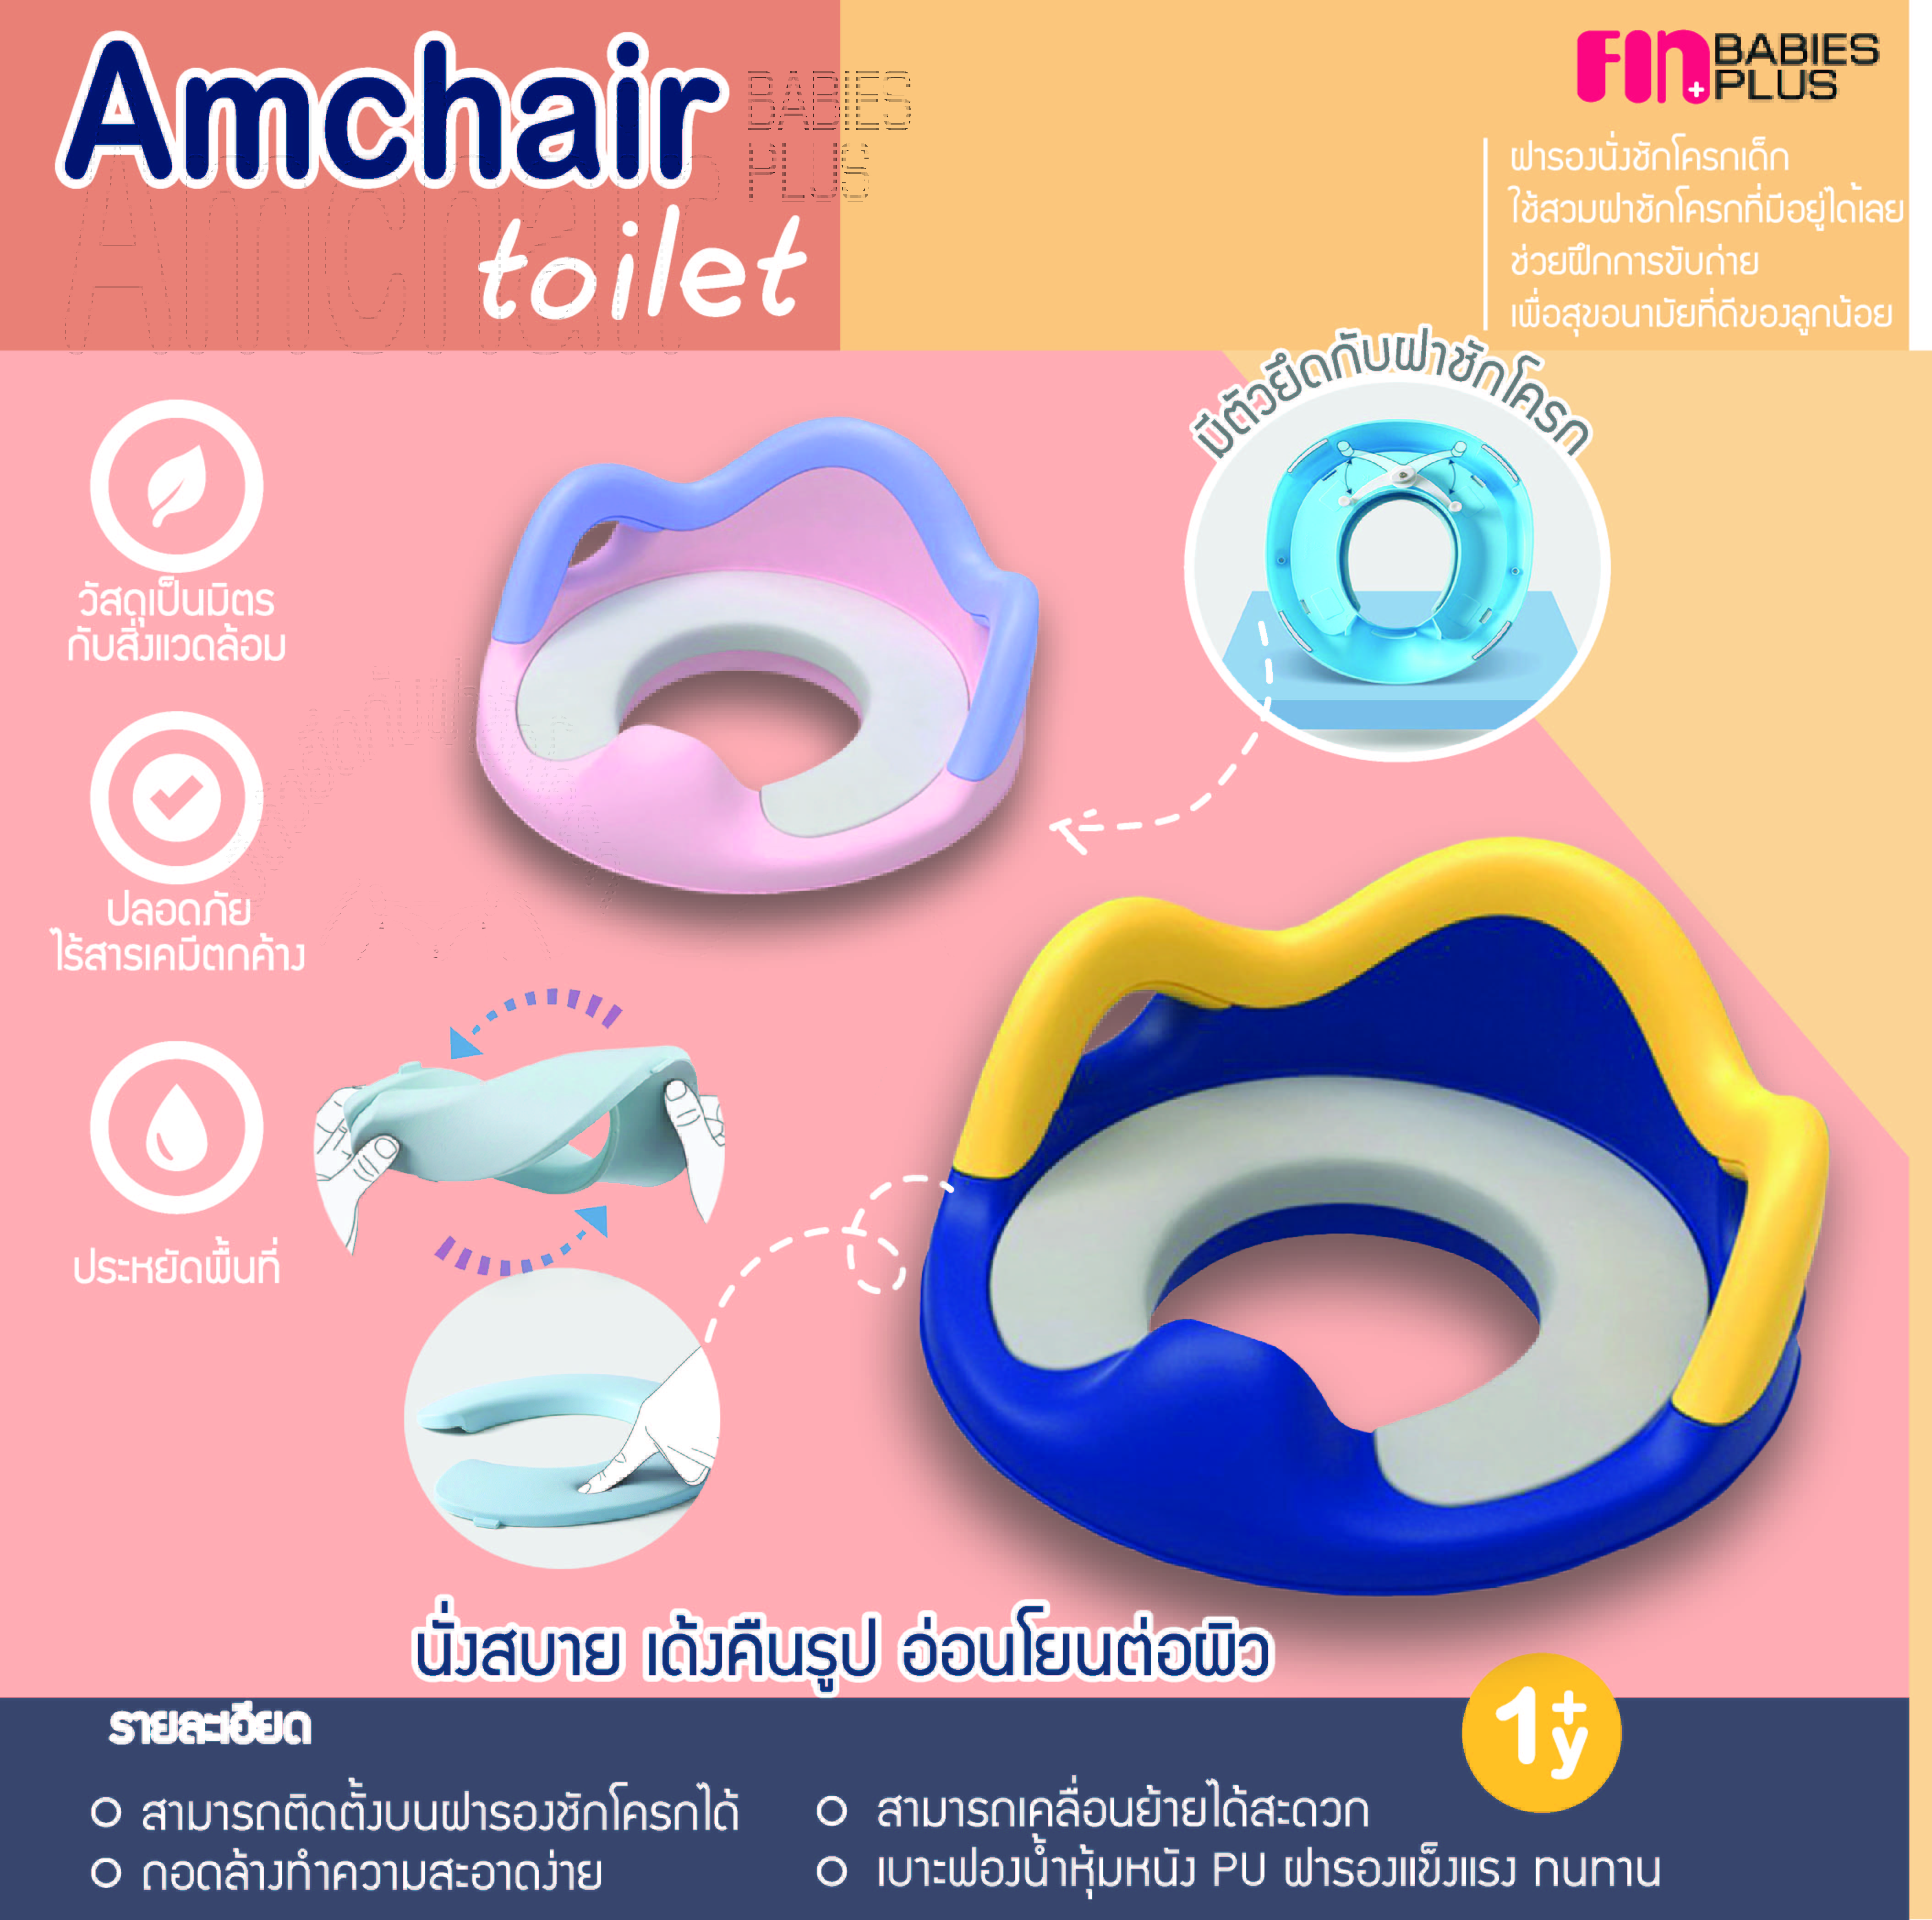 FIN Amchair toilet ฝารองนั่งชักโครกเด็ก ฝึกการขับถ่าย มีเบาะเสริมฟองน้ำ ตัวช่วยในการขับถ่ายของลูกน้อย รุ่น PRF21